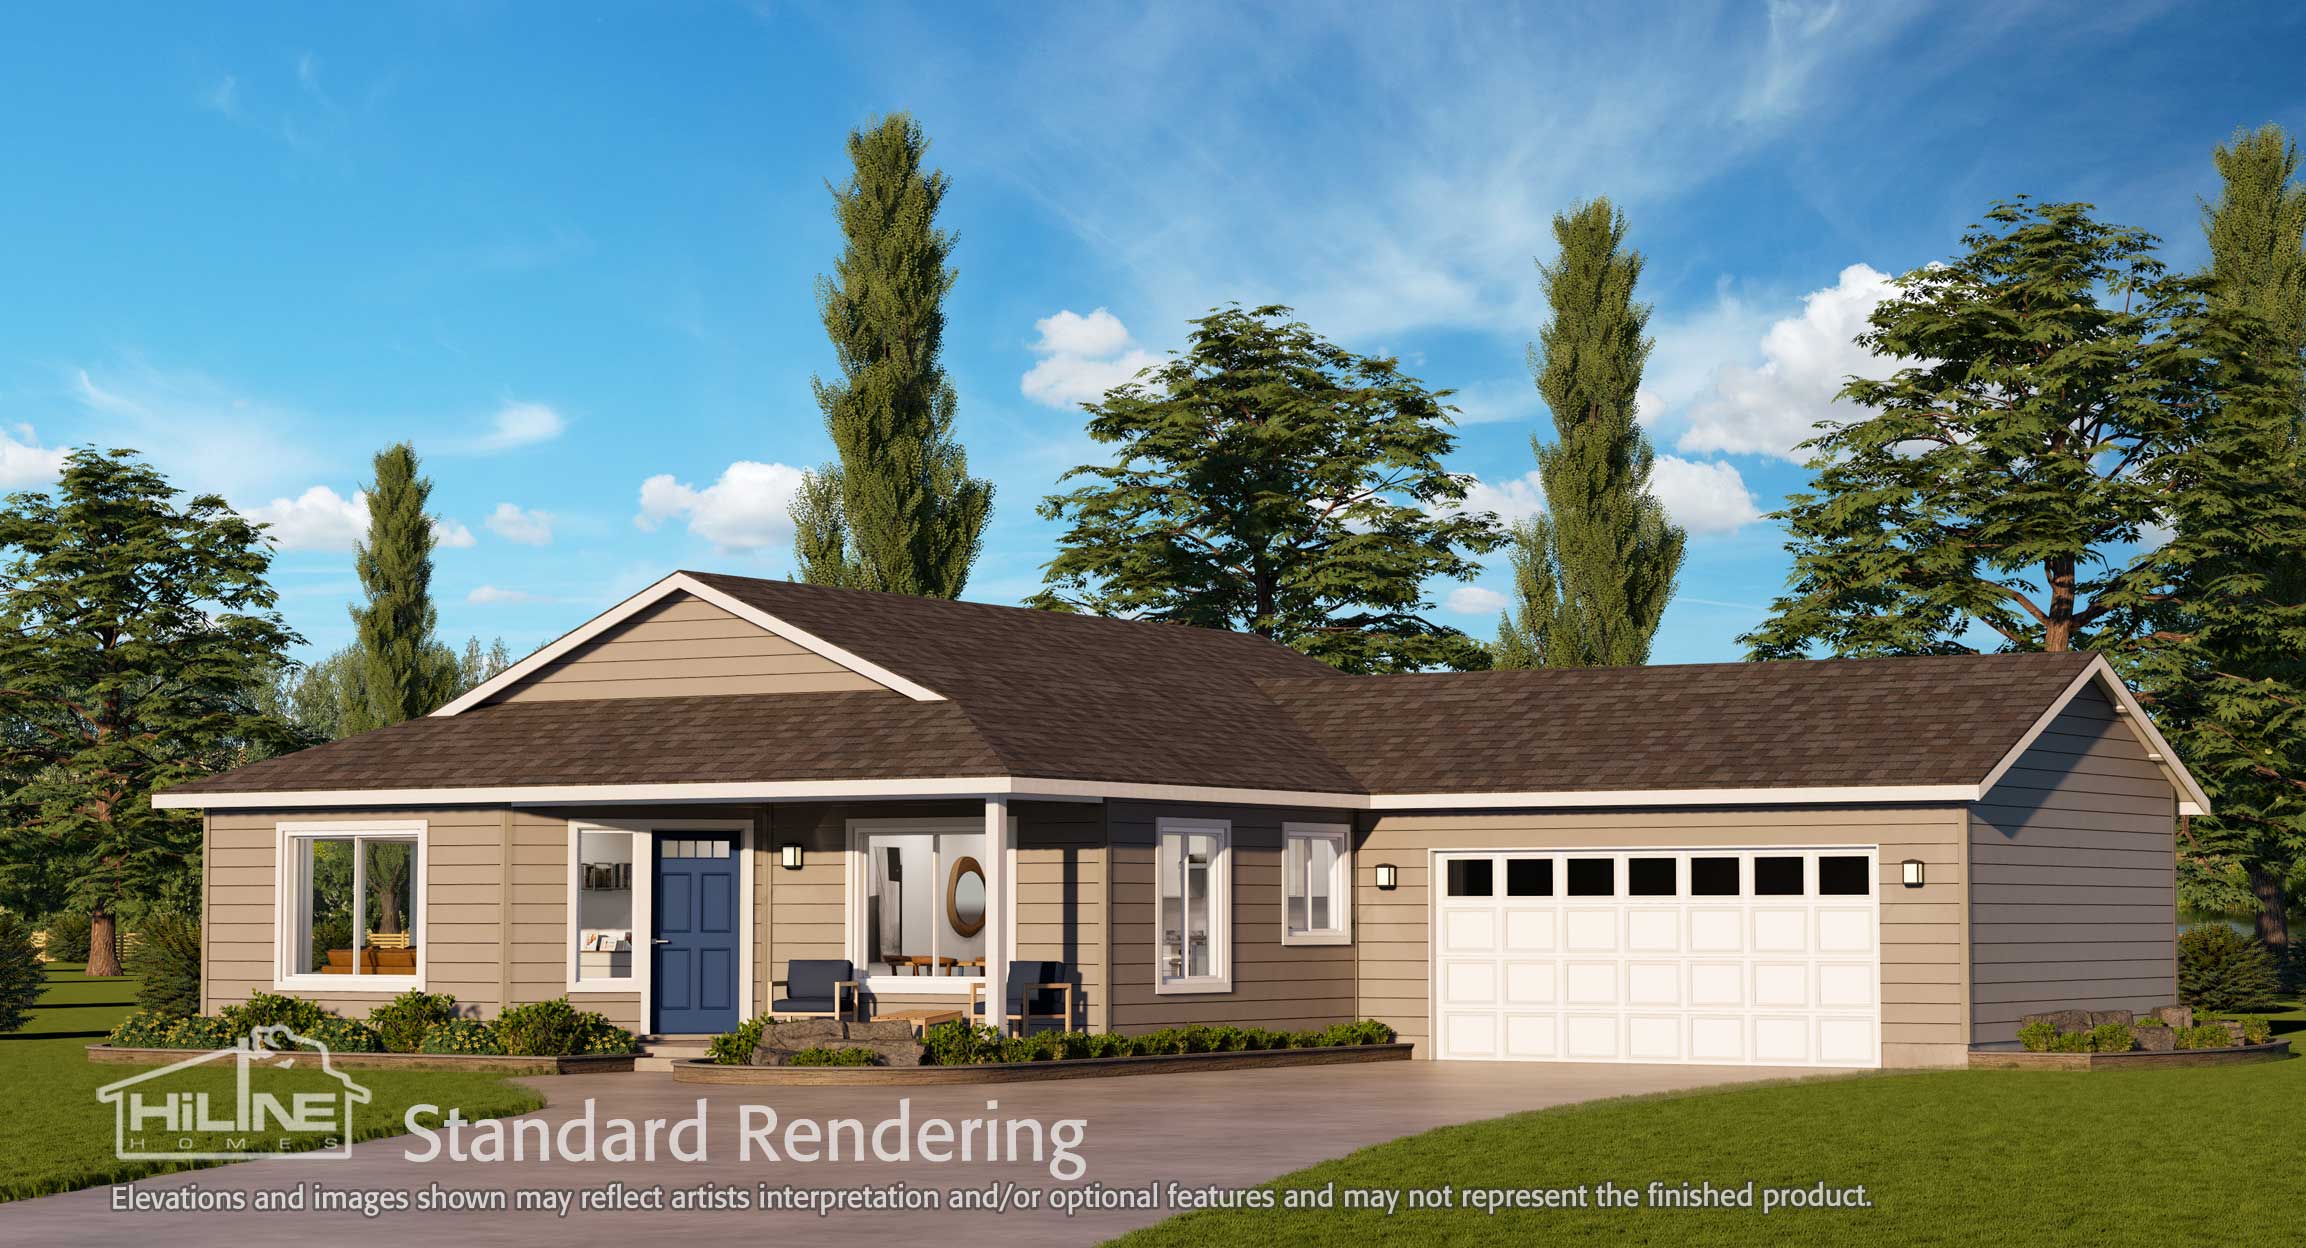 Image of Home Plan 1248 Standard Rendering.